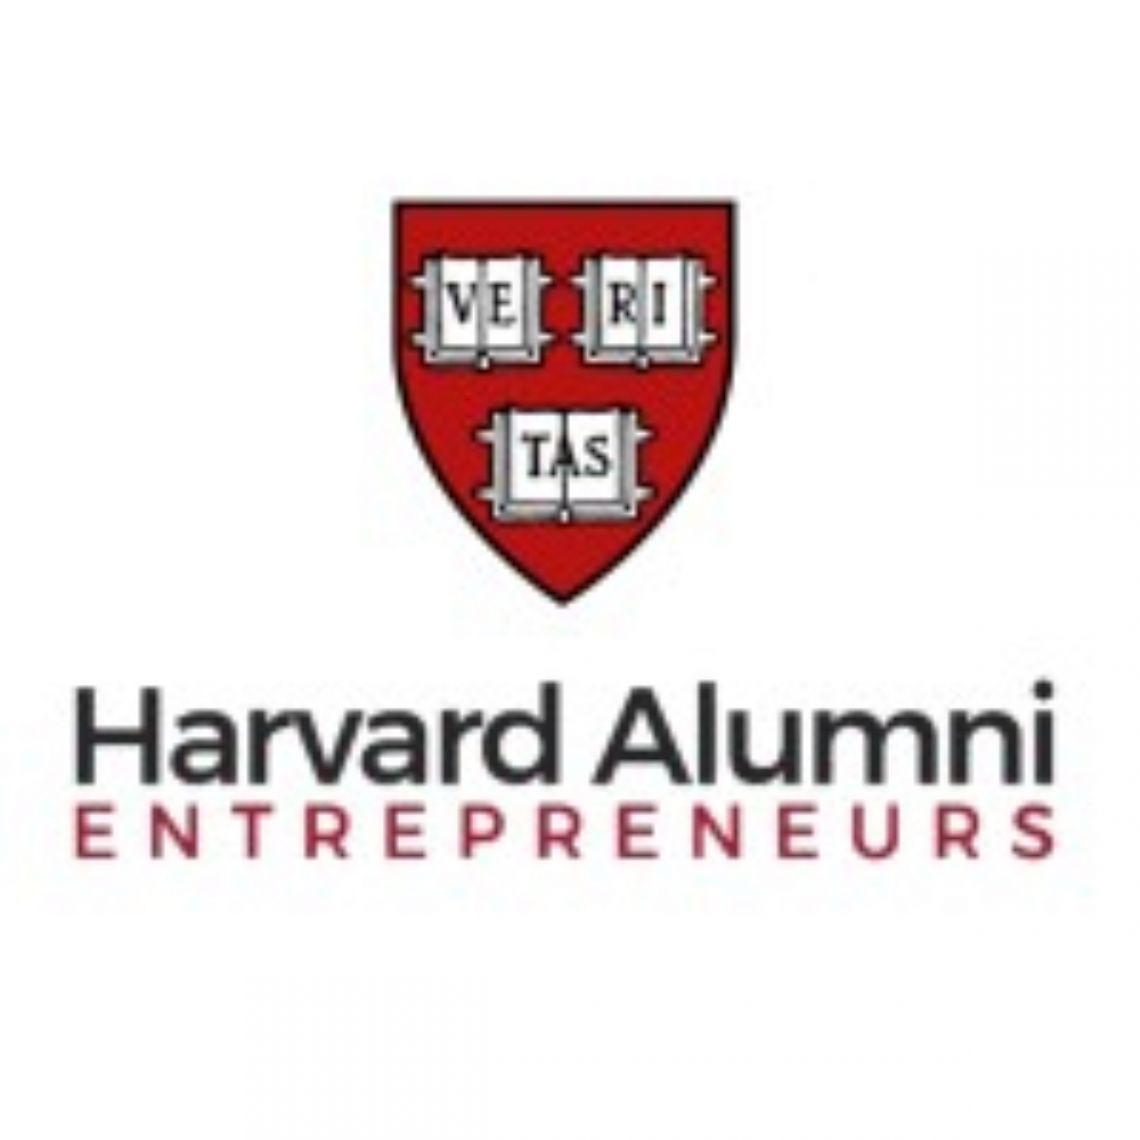 Harvard Alumni Entrepreneurs